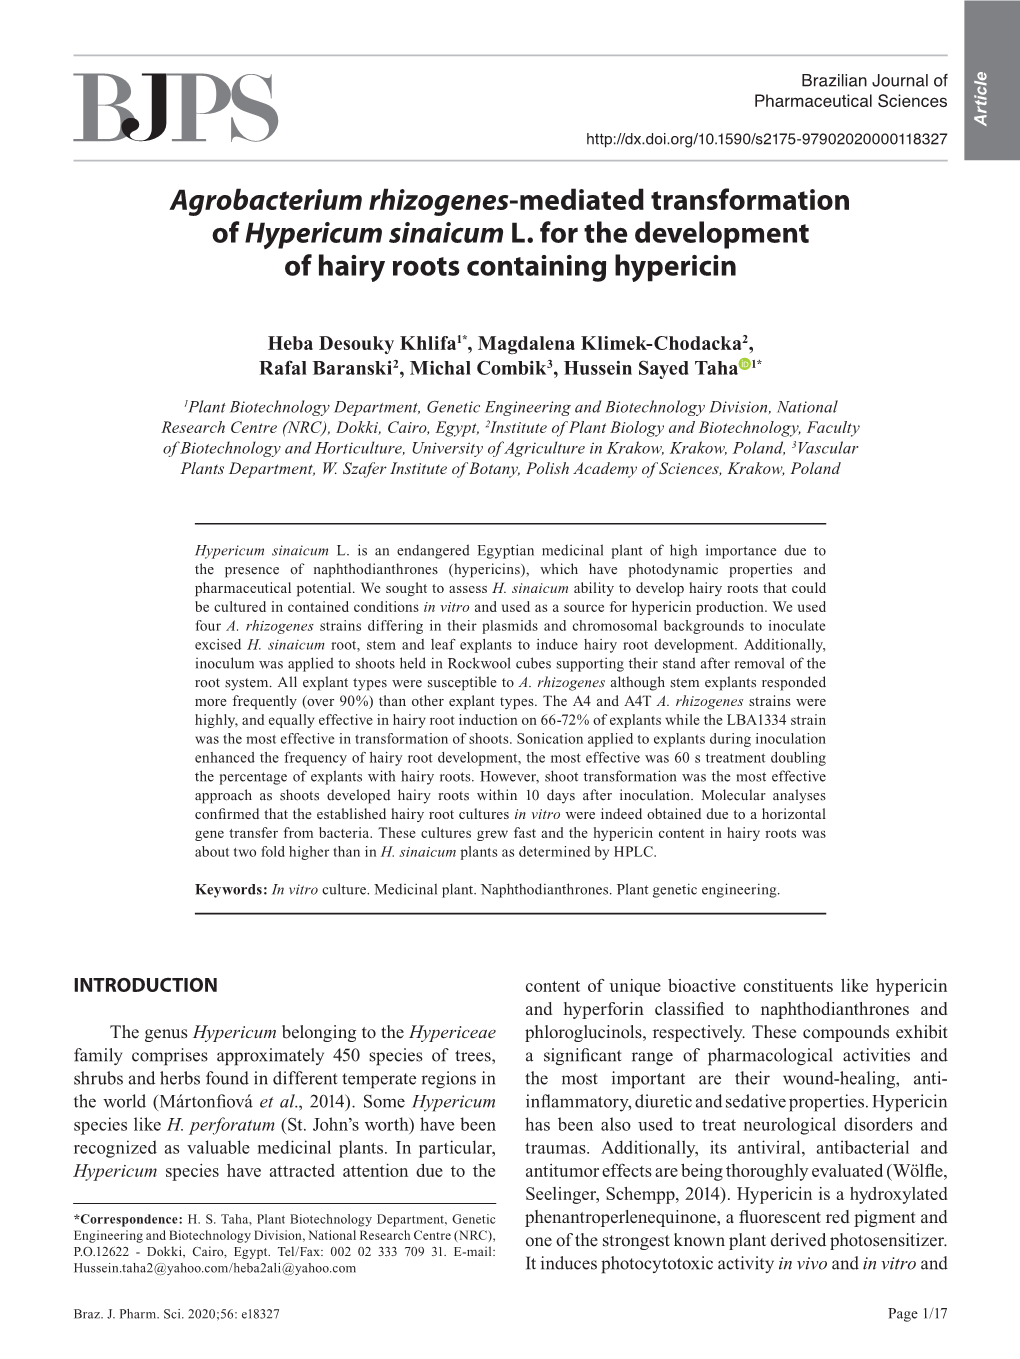 Agrobacterium Rhizogenes-Mediated Transformation of Hypericum Sinaicum L